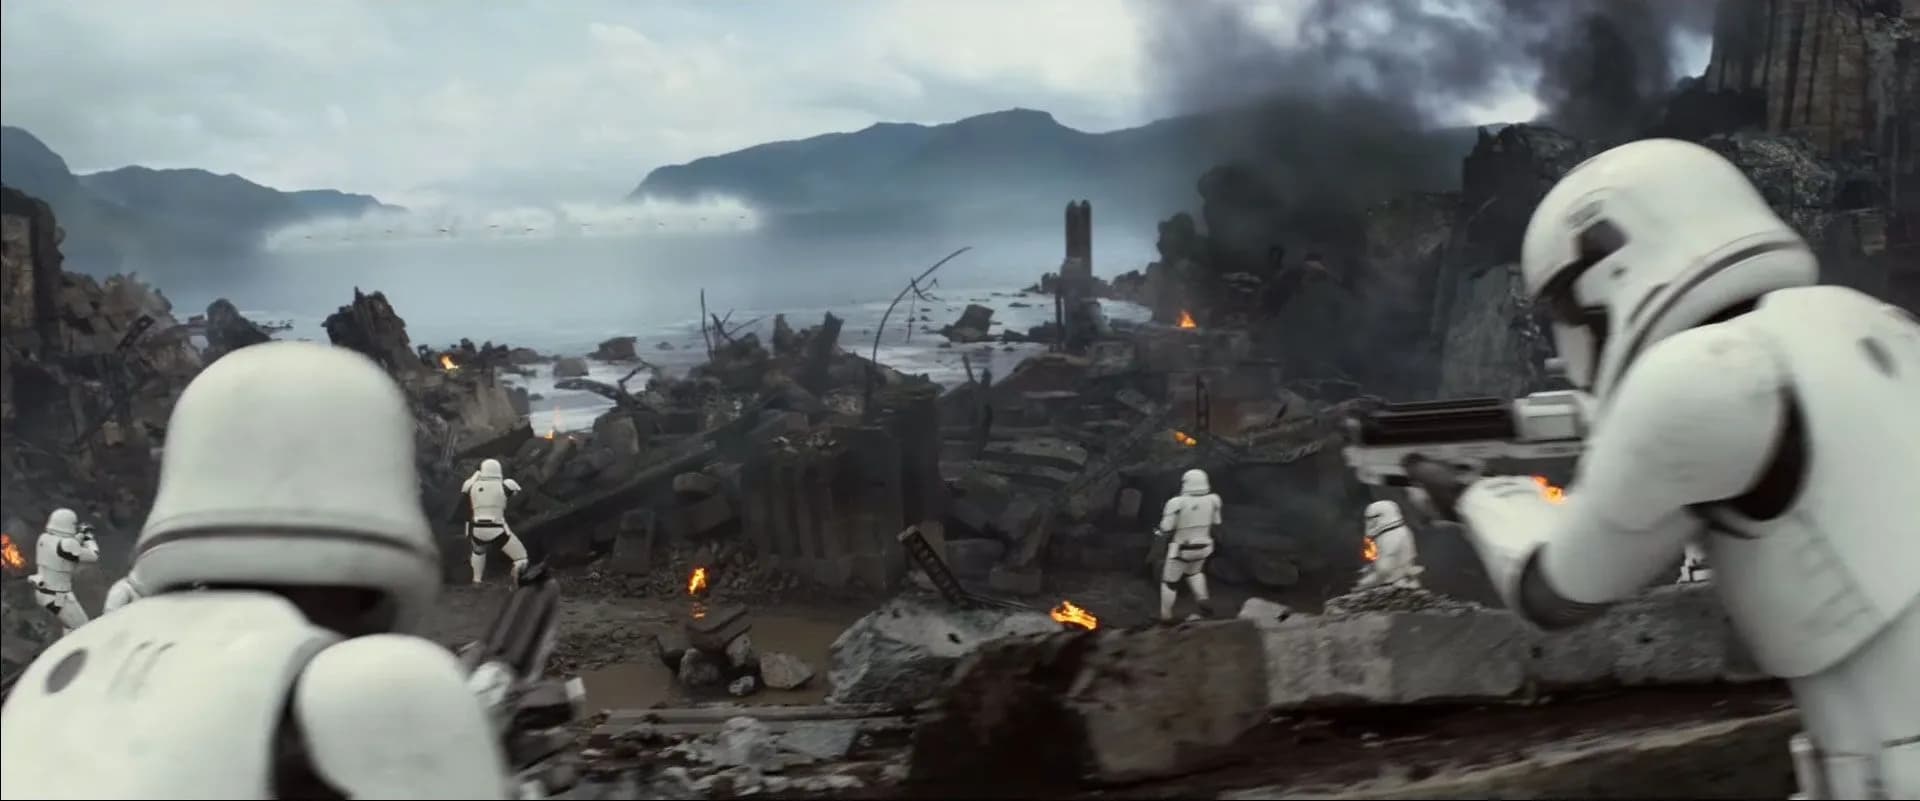 Les Stormtroopers observent les X-Wing T-70 de la Résistance approcher